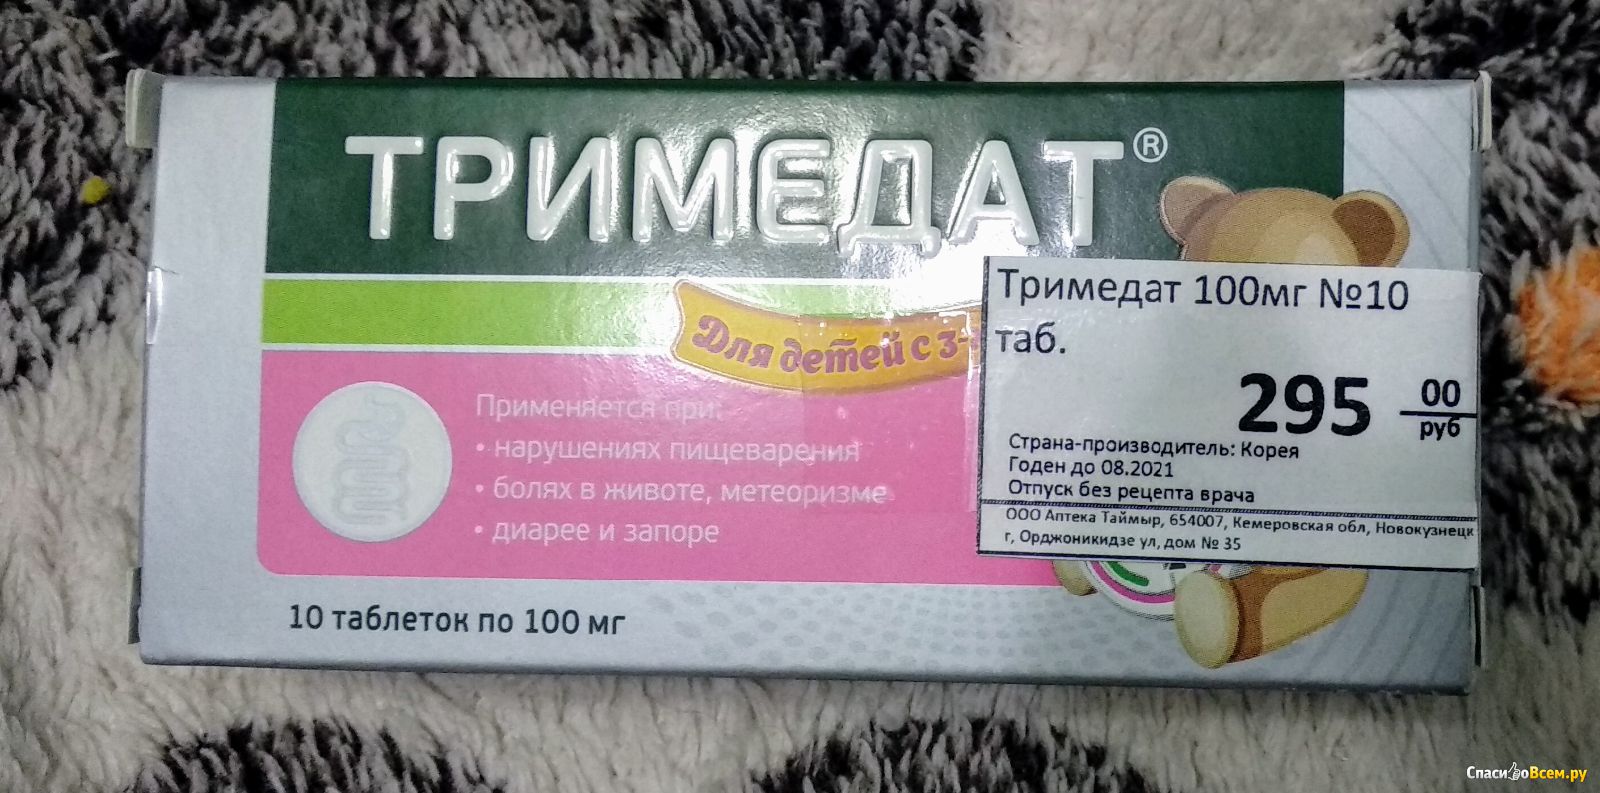 Тримедат 30 Таблеток Цена В Москве